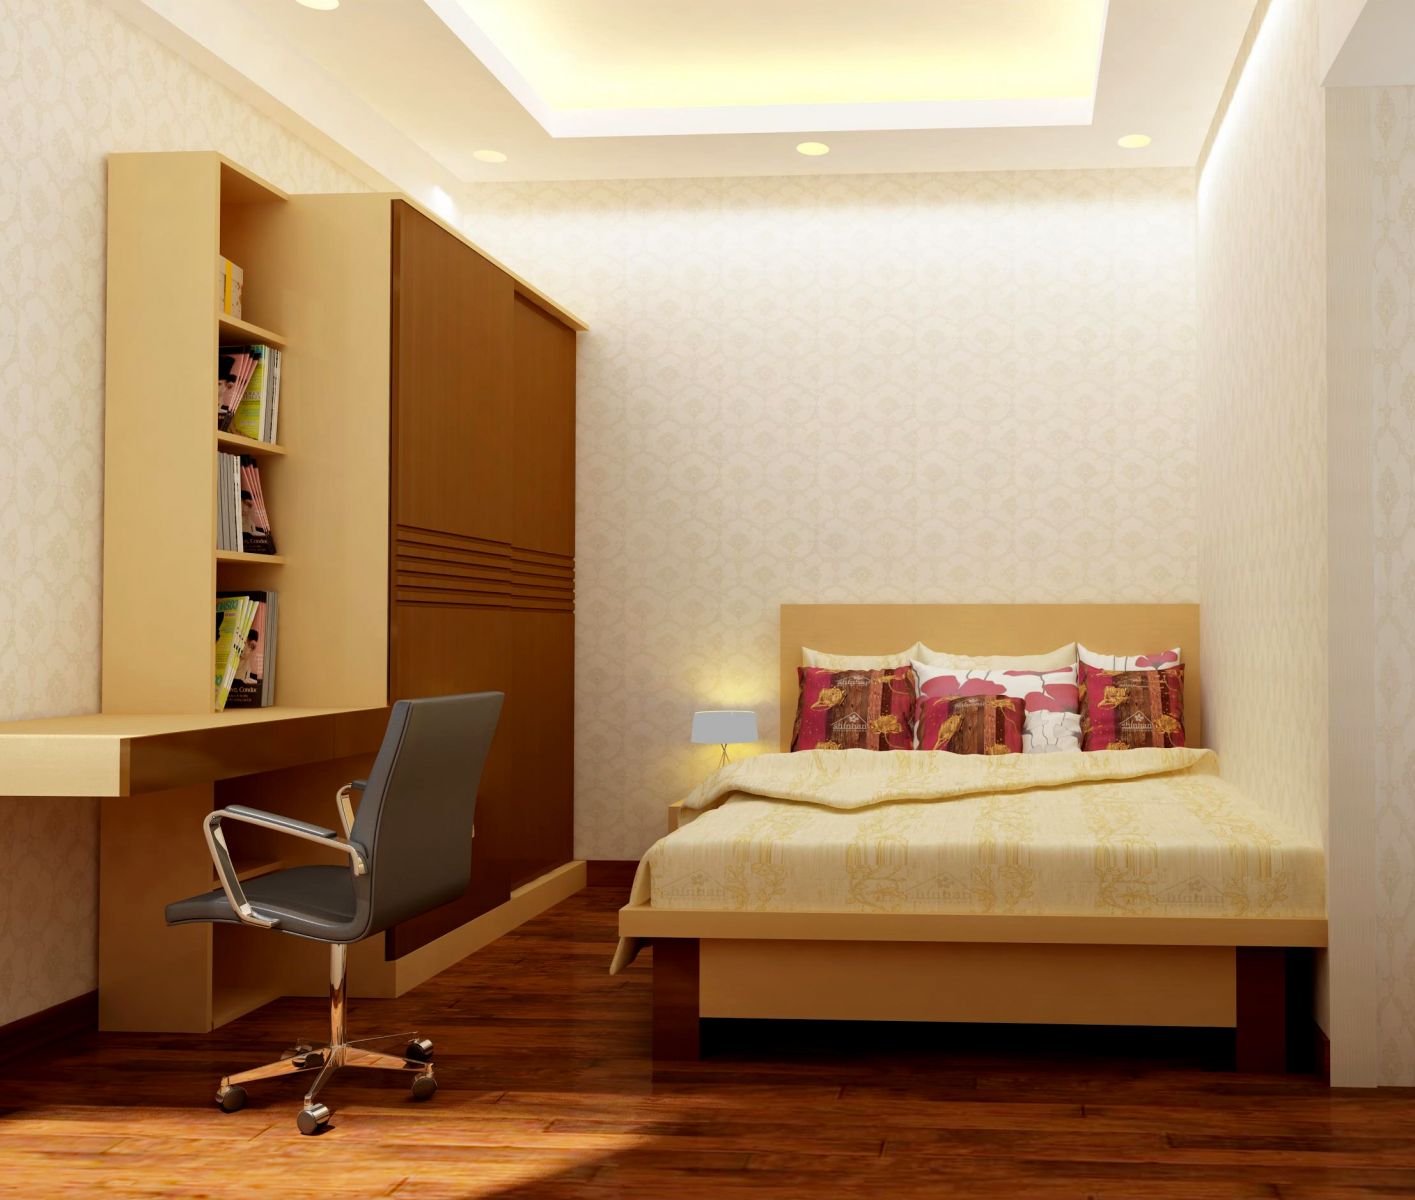 Bài trí phòng ngủ nhỏ với màu sắc đối lập đem lại cho căn phòng một phong cách đặc trưng riêng